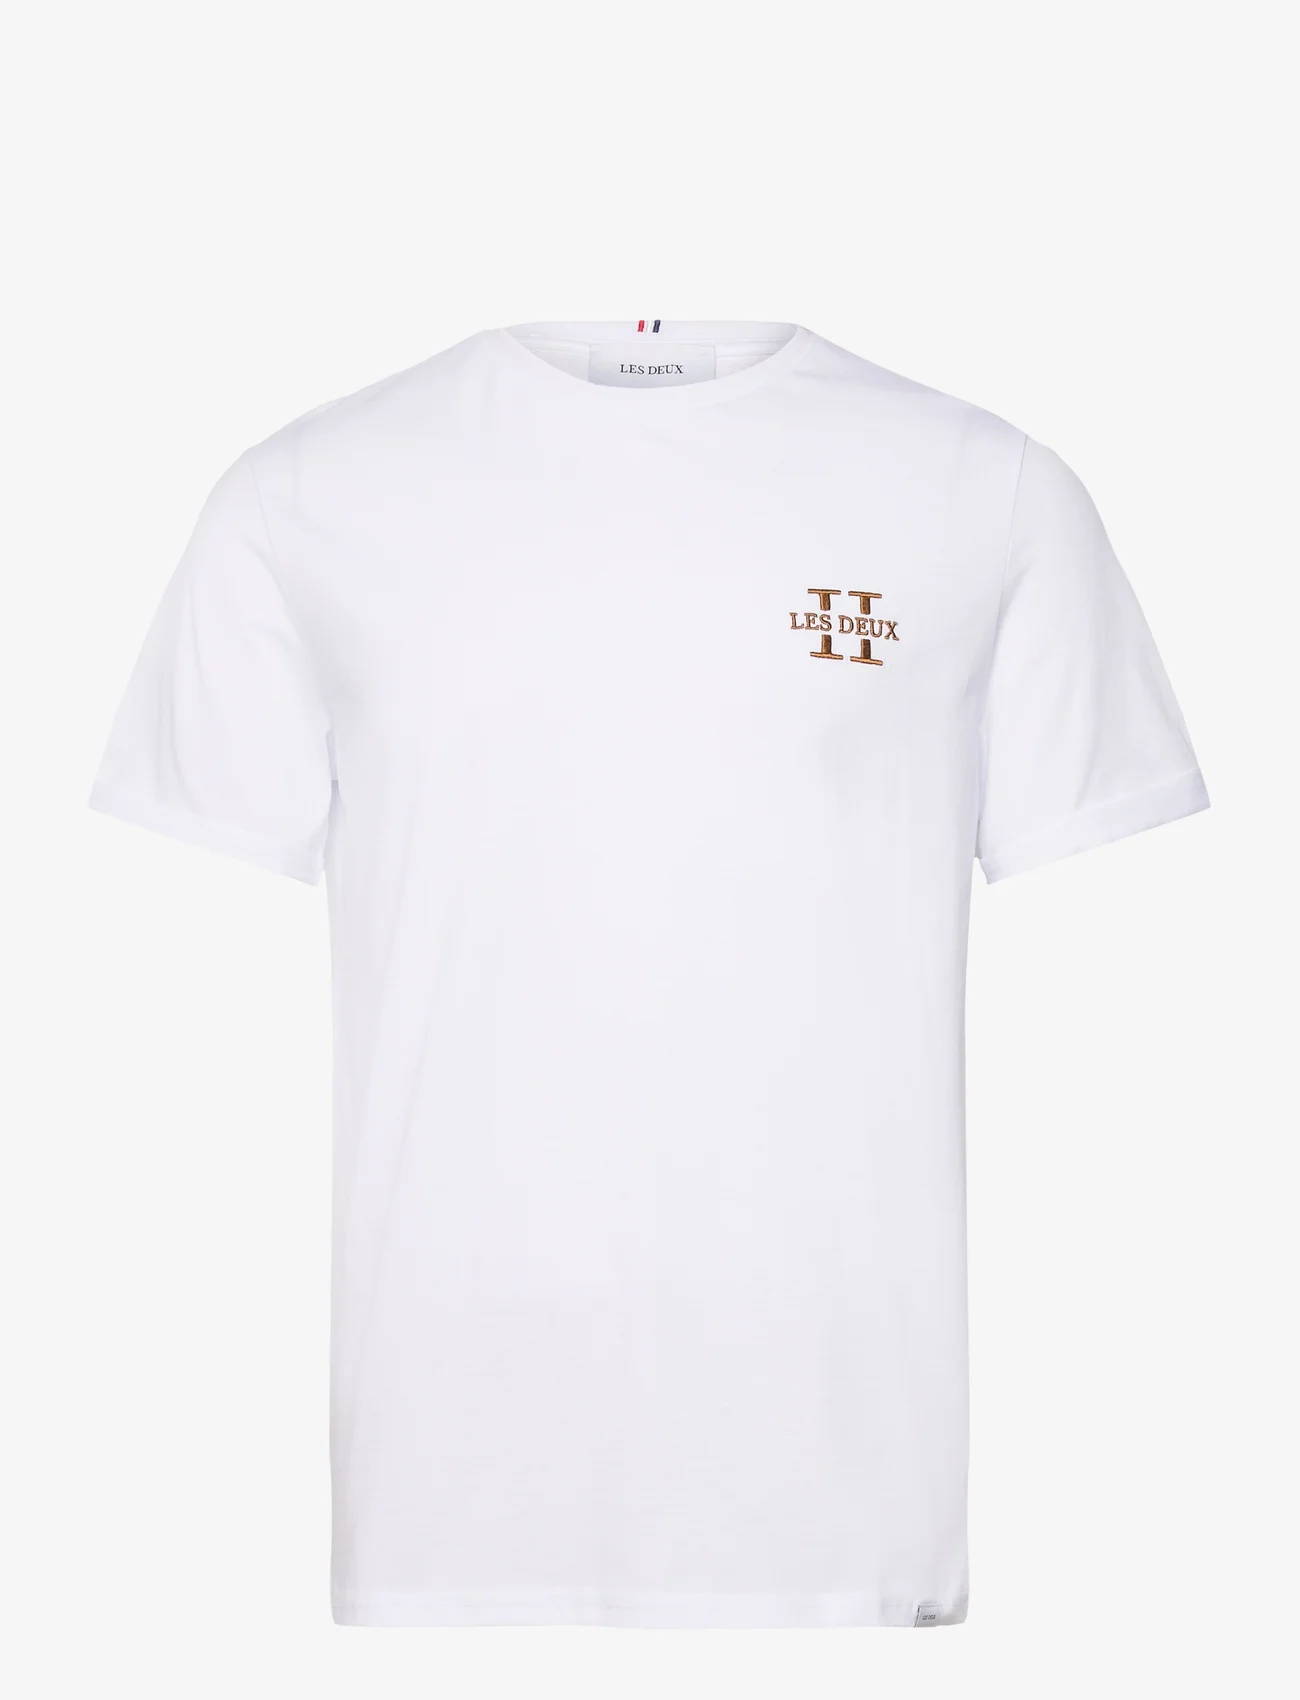 Les Deux - Les Deux II T-Shirt 2.0 - ziemeļvalstu stils - white/dark copper - 0